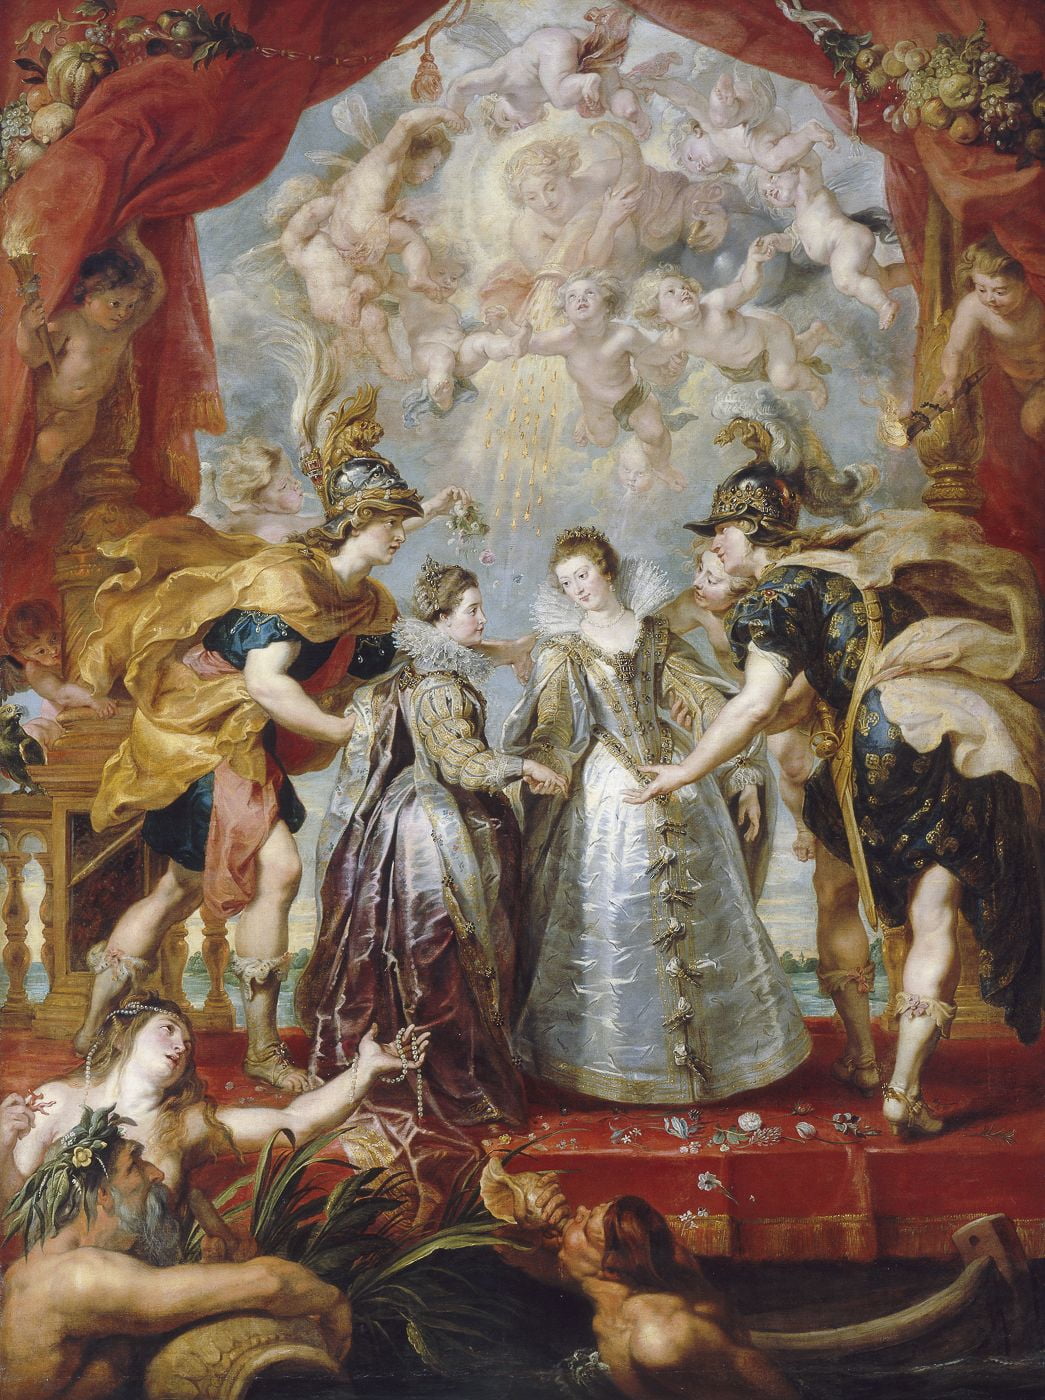 프랑스와 스페인의 두 공주 교환(1622~1625). 마리 드 메디시스 연작 중 일부. 마리는 스페인 왕가와 겹사돈을 맺었다. 아들인 루이 13세는 스페인 공주와 결혼시켰고, 딸인 안 도트리슈는 스페인의 펠리페 4세에게 시집보내면서다.  /루브르박물관 소장